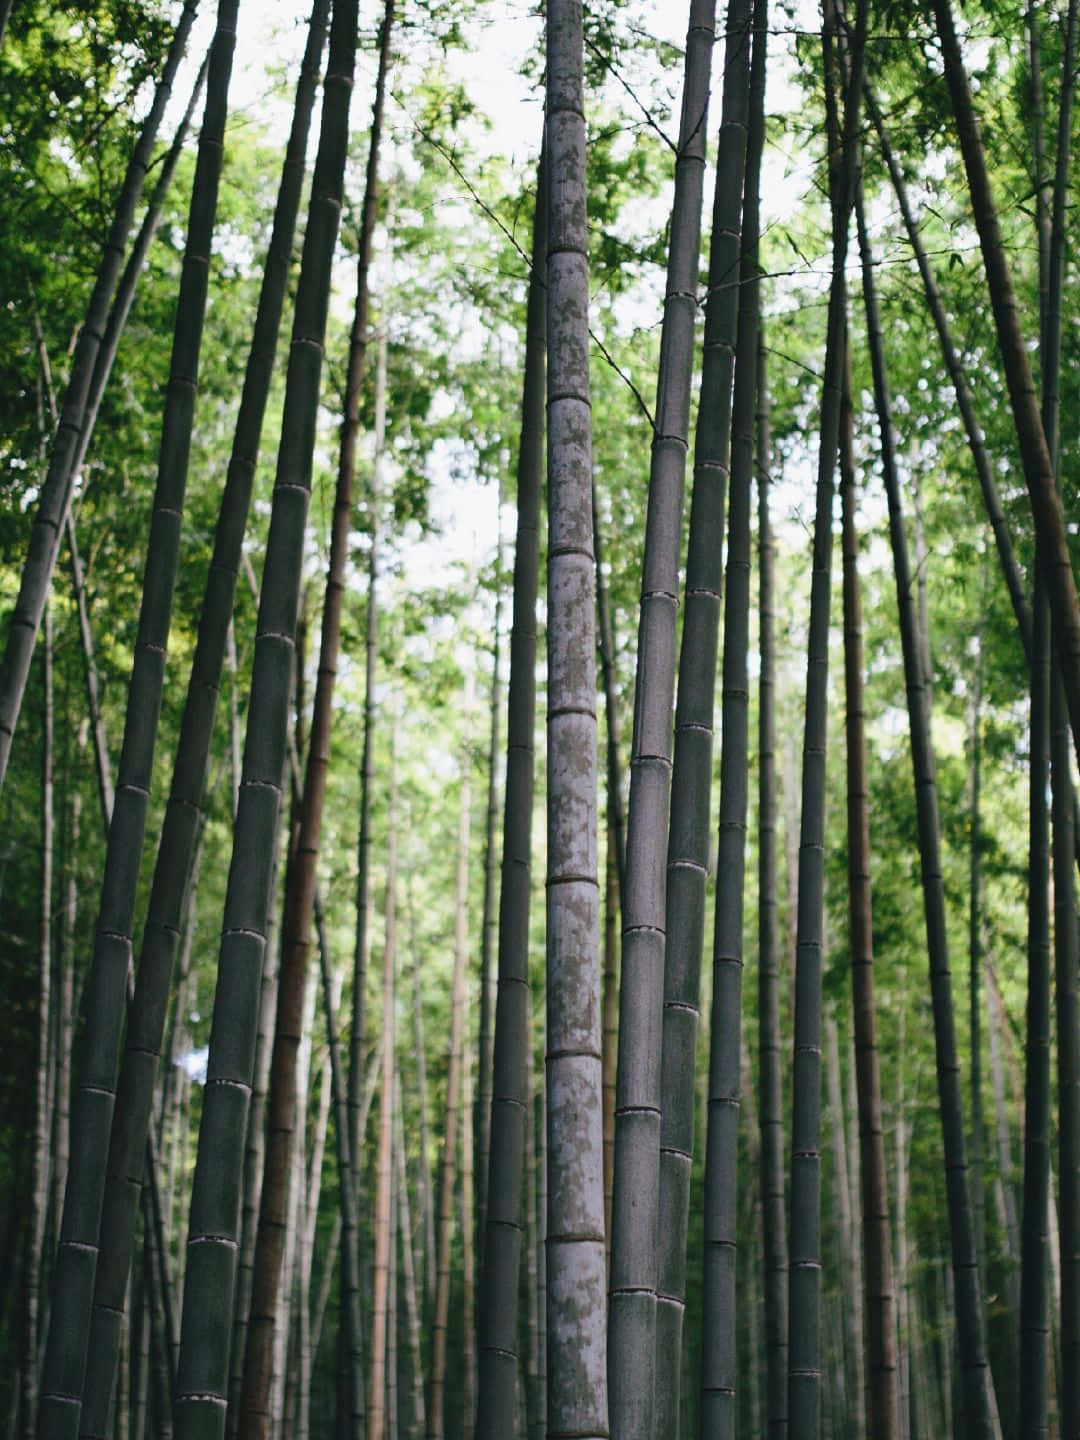 1440pfondo De Pantalla De Bambú Estética Árboles De Bambú